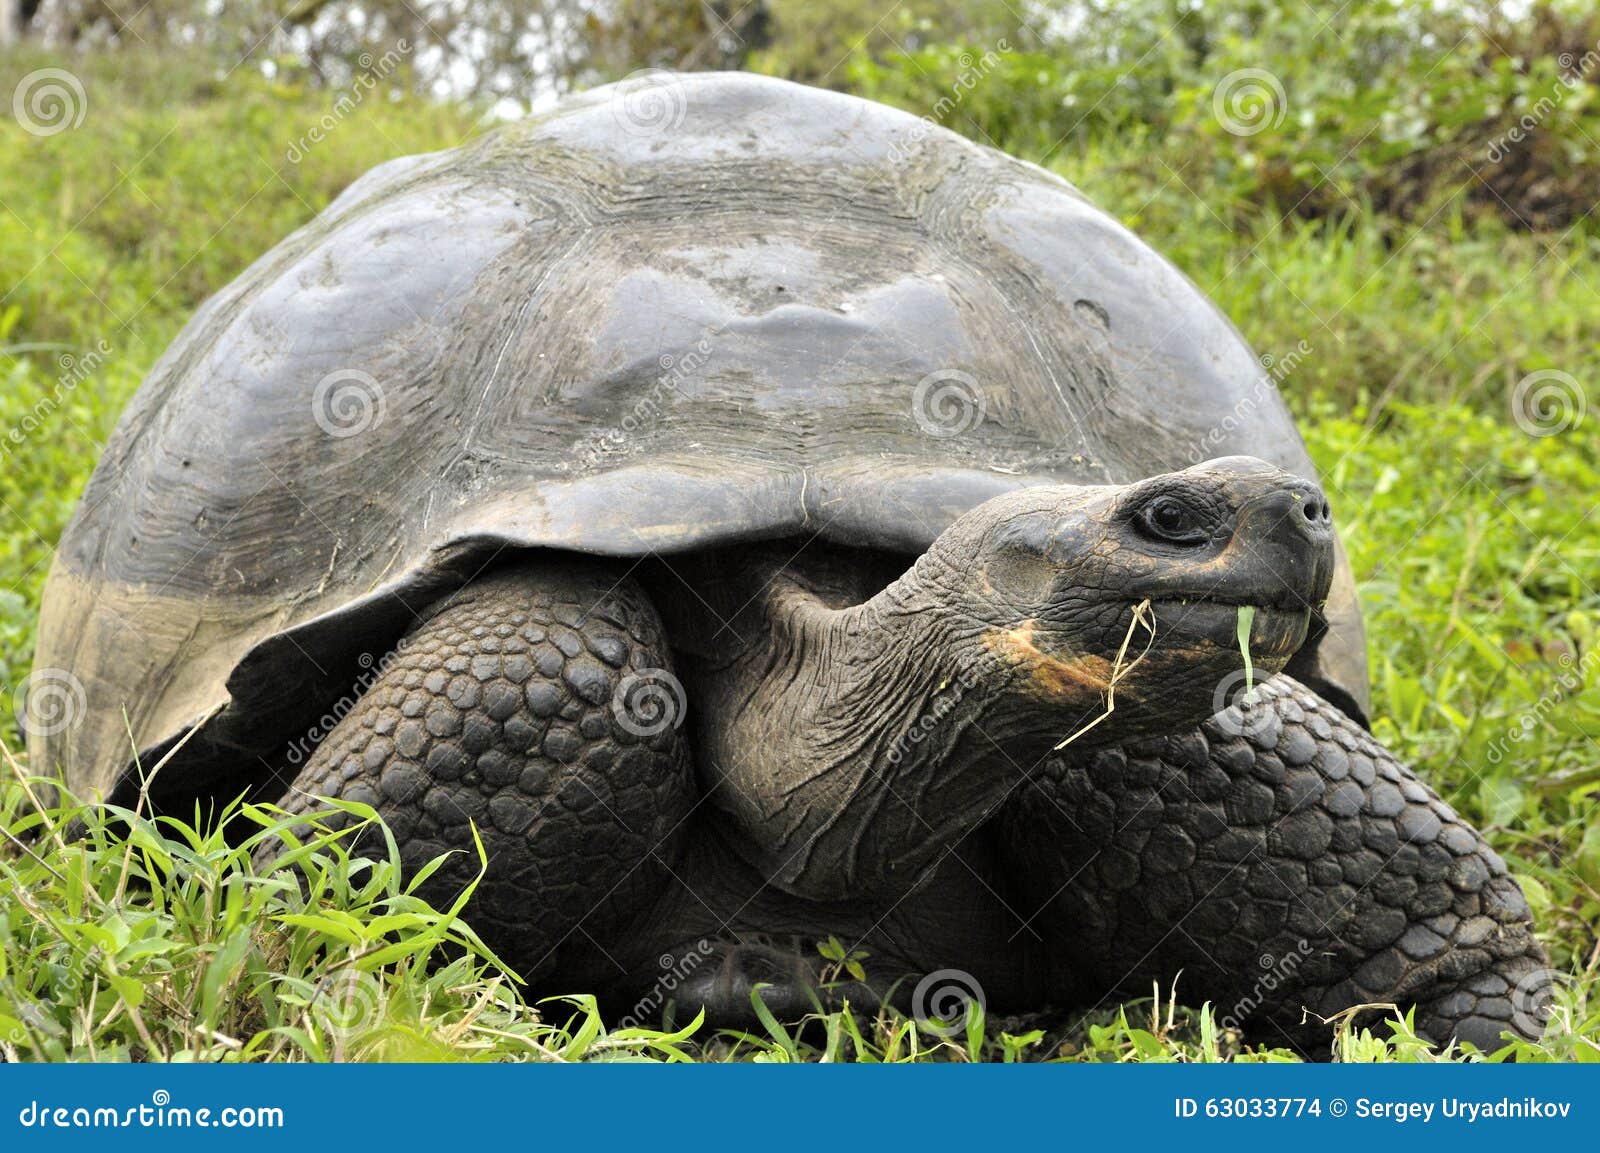 the galapagos tortoise or galapagos giant tortoise (chelonoidis nigra).